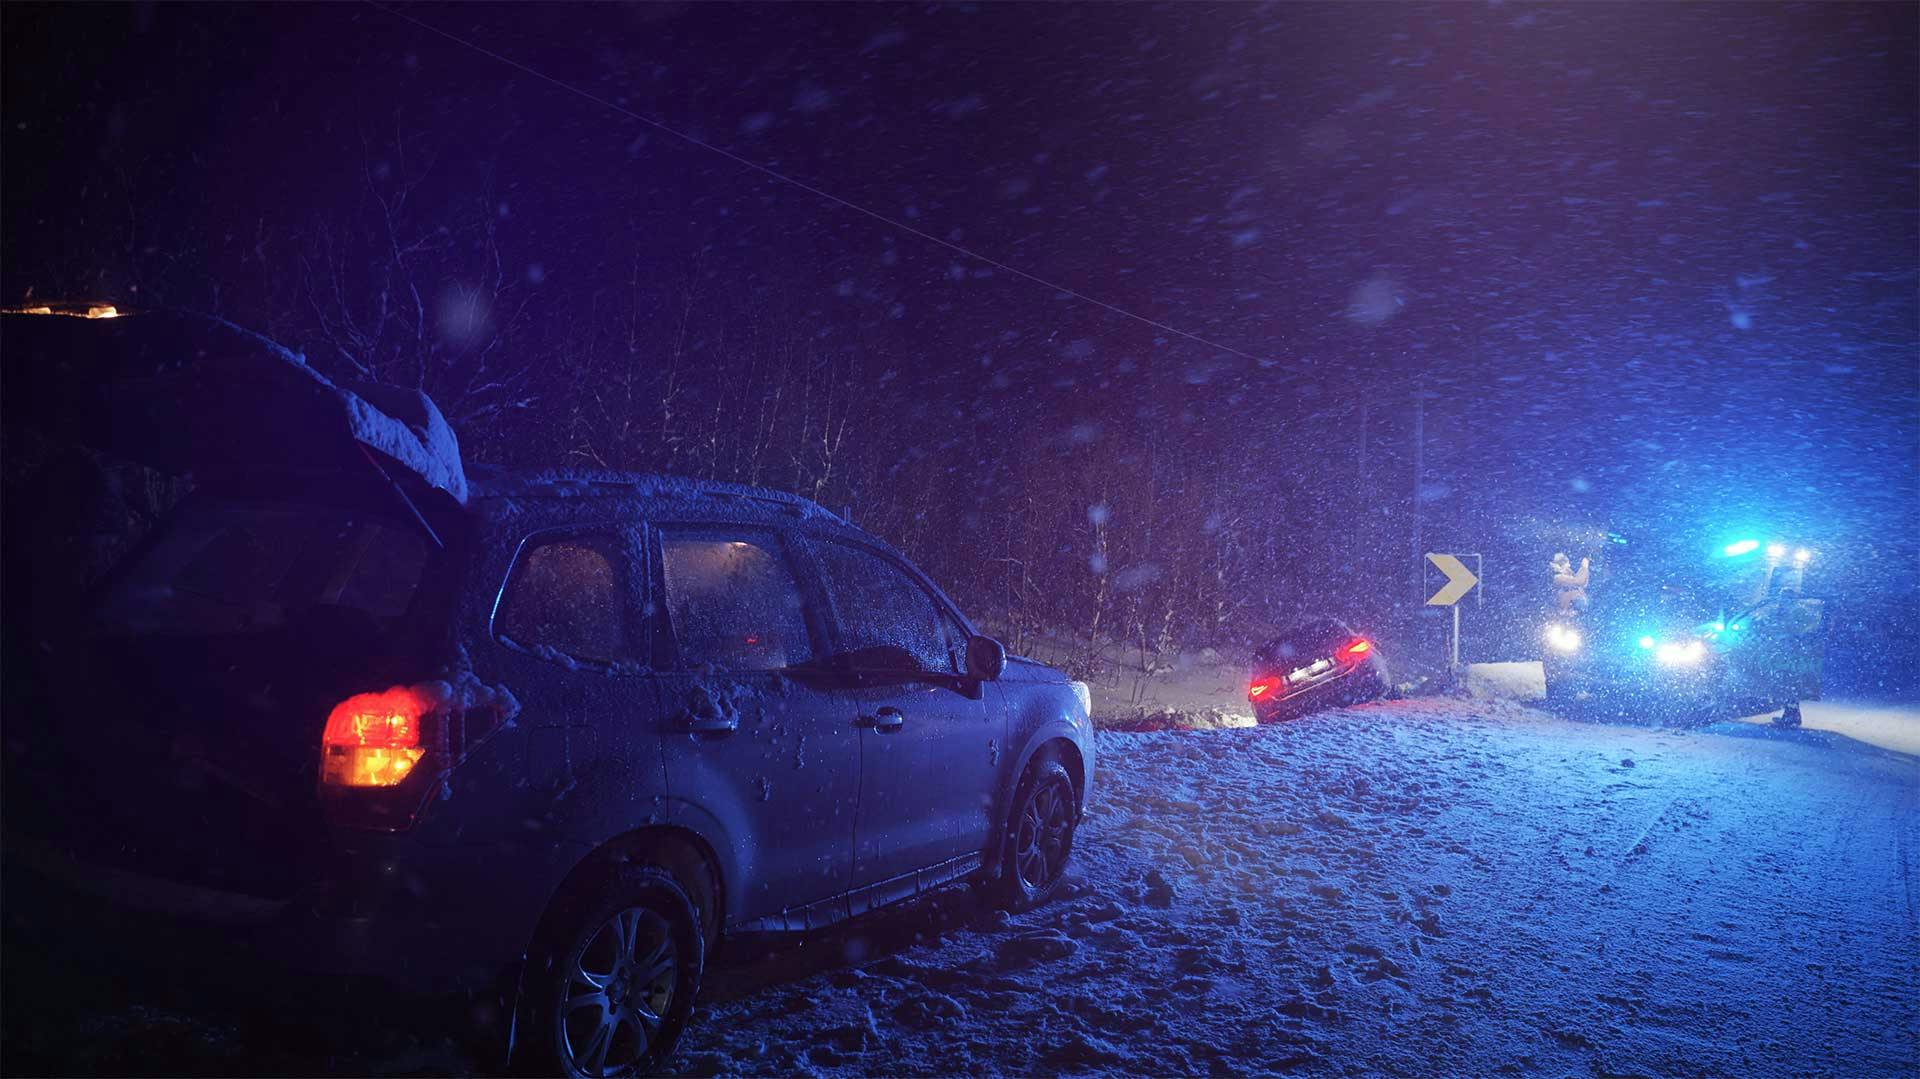 Zwei Autos im Schneesturm nachts an einem Unfallort, mit Blaulichtern der Rettungsfahrzeuge im Hintergrund.